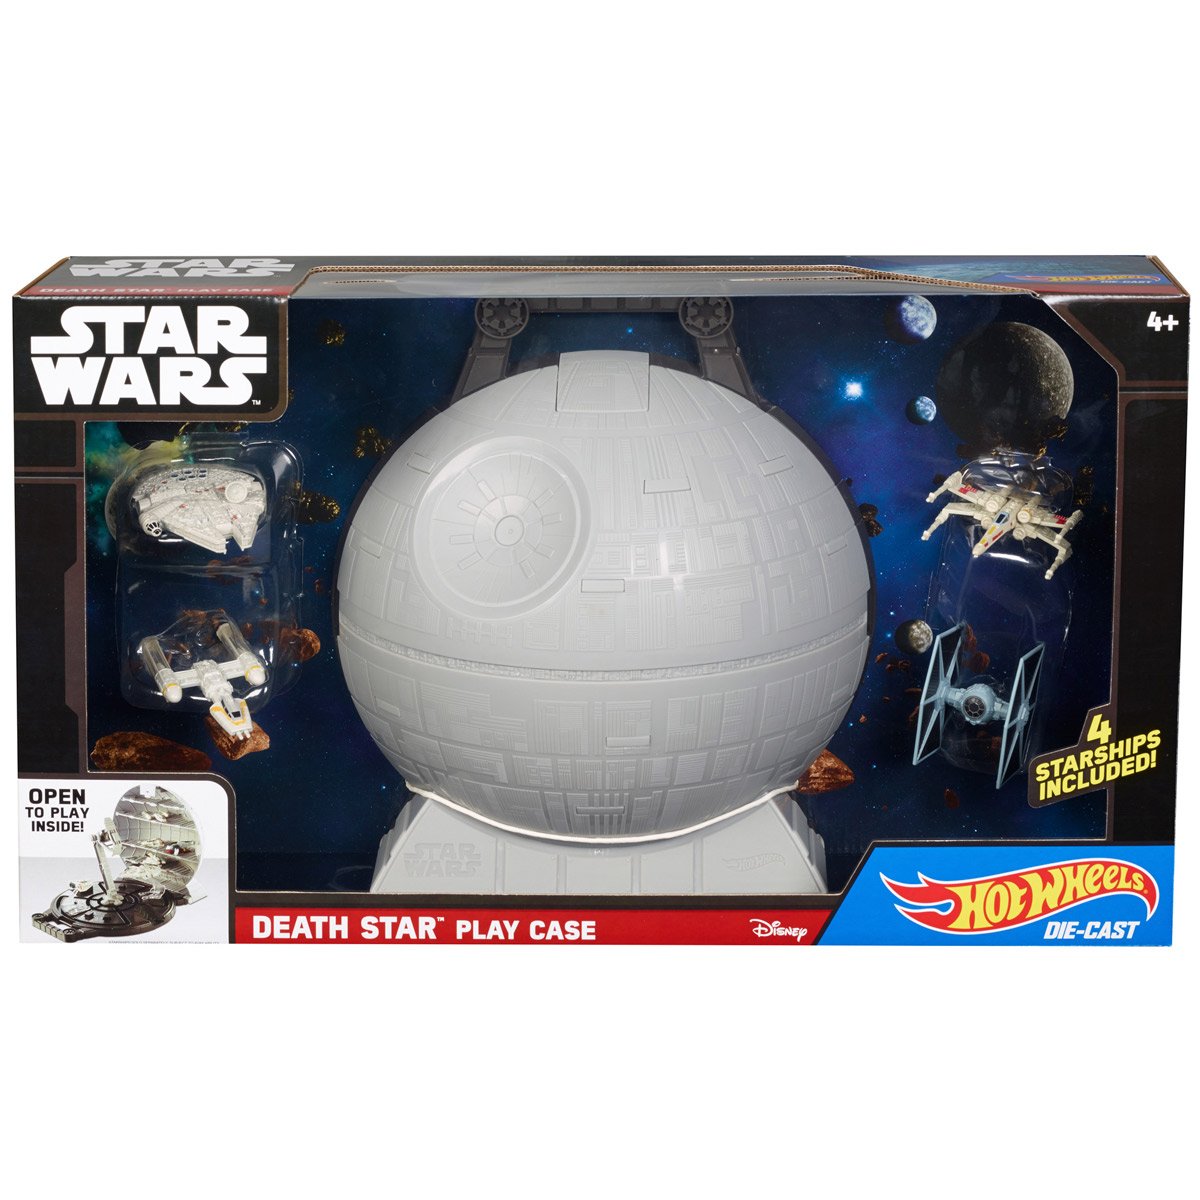 Hot Wheels Star Wars Death Star Playcase + 4 Stars Mattel